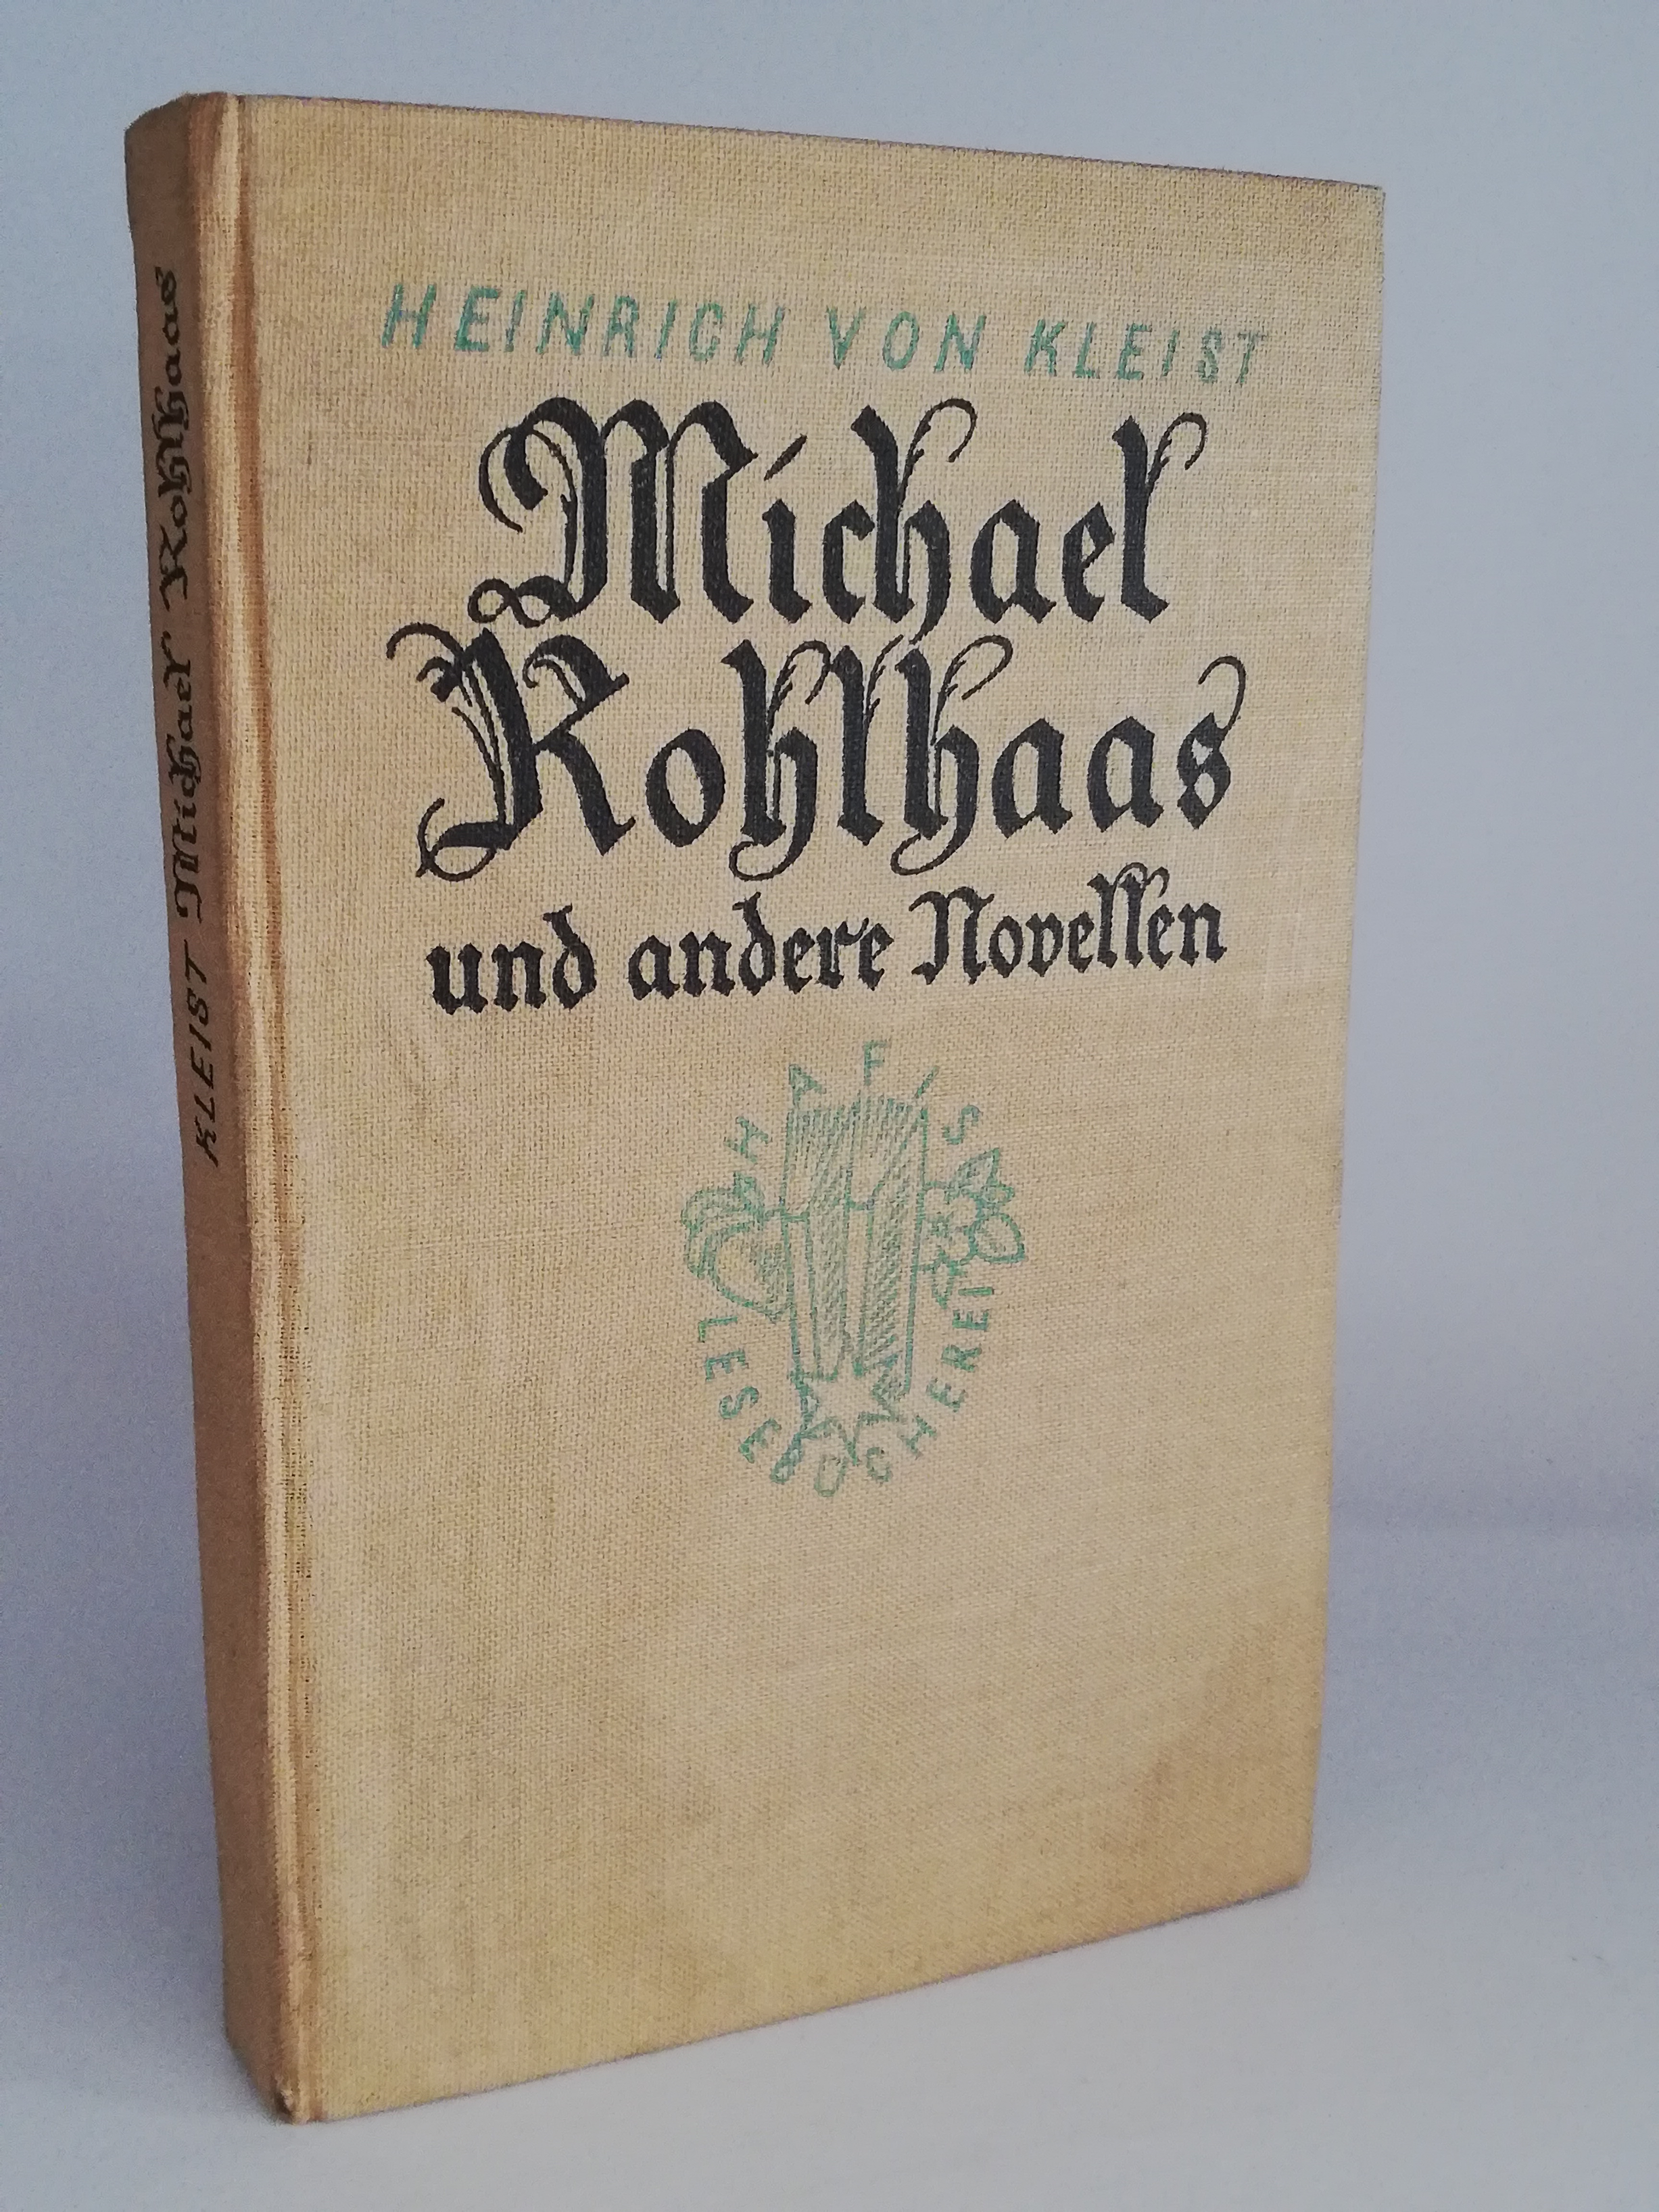 Heinrich von Kleist  MICHAEL KOHLHAAS UND ANDERE NOVELLEN 